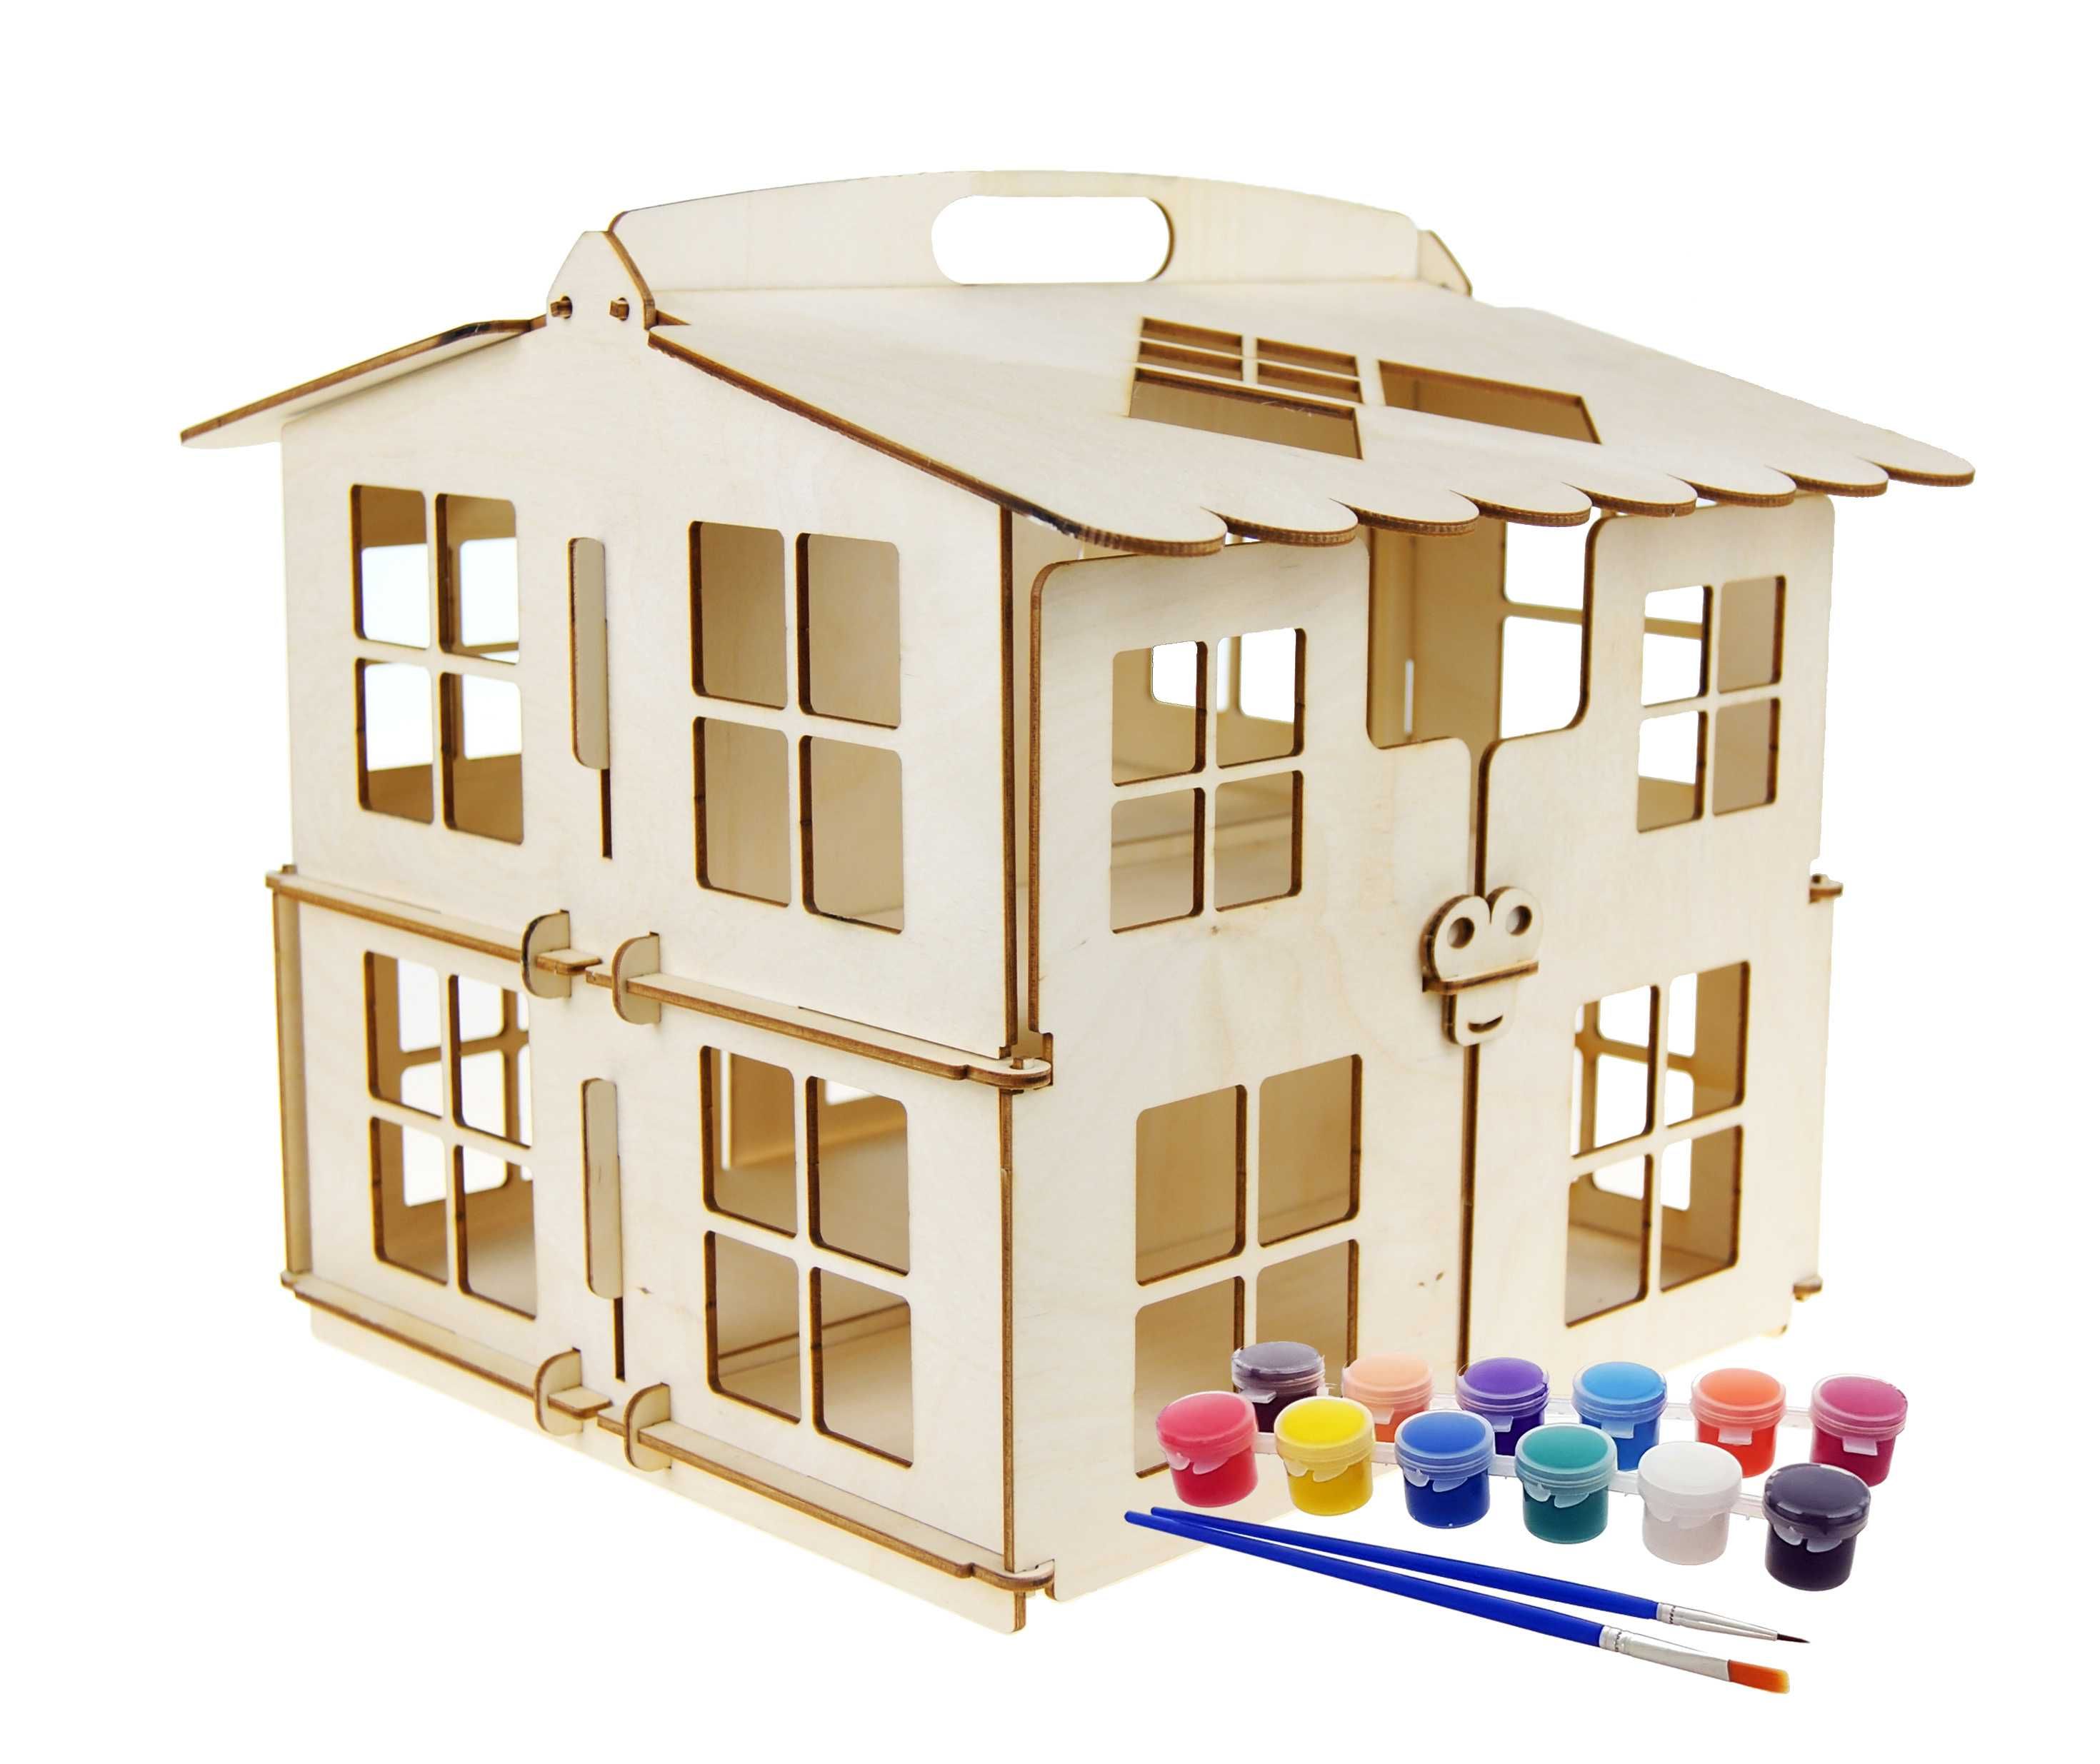 Drewniany domek dla lalek- do złożenia i malowania+ farbki